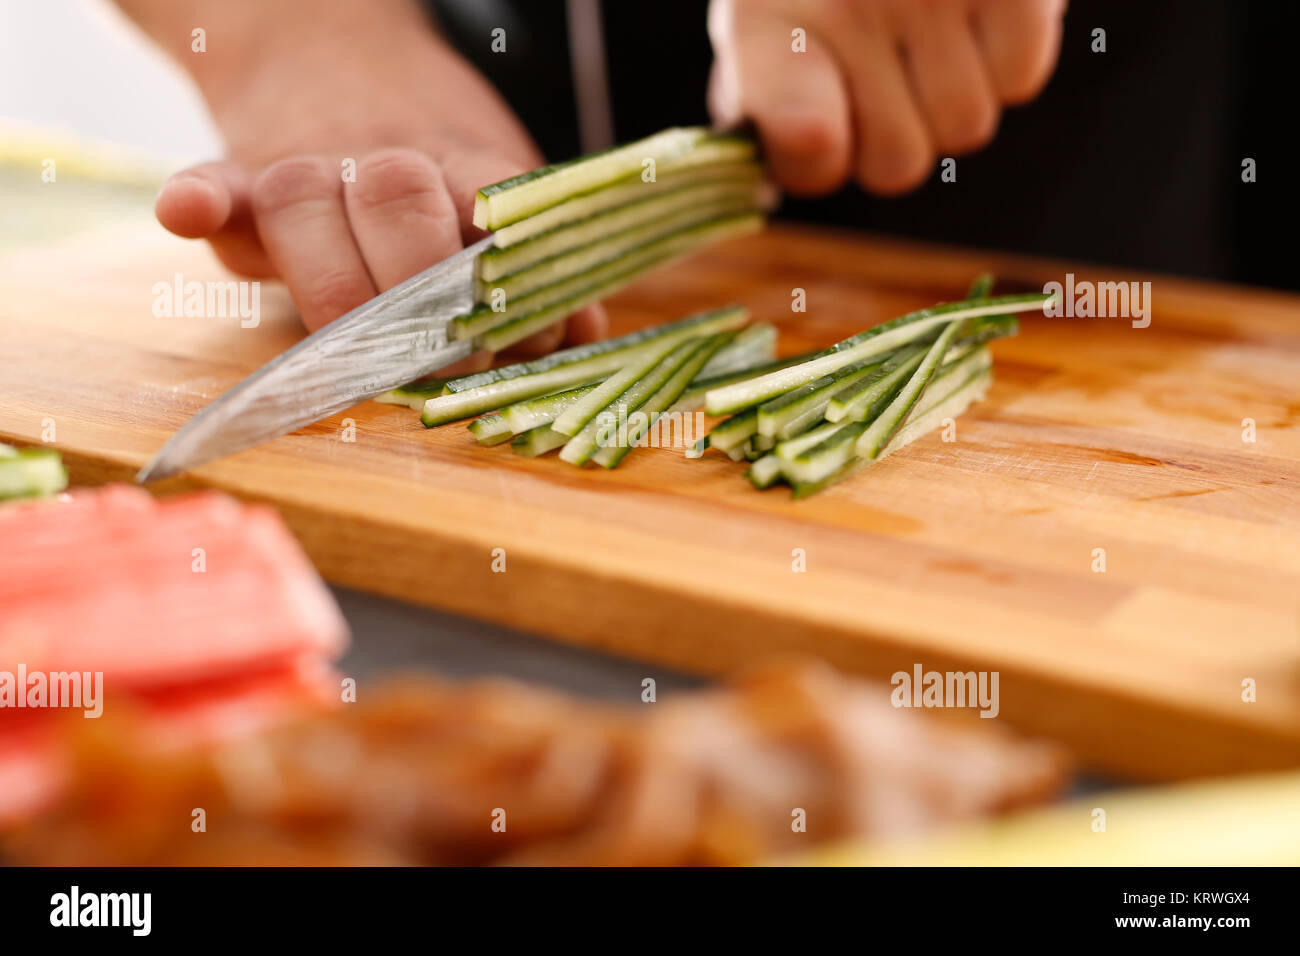 Sushi , etapy przygotowywania sushi z Å'ososiem, paluszkiem krabowym, ogÃ³rkiem tykwÄ… zawiniÄ™tego w glon nori Foto Stock